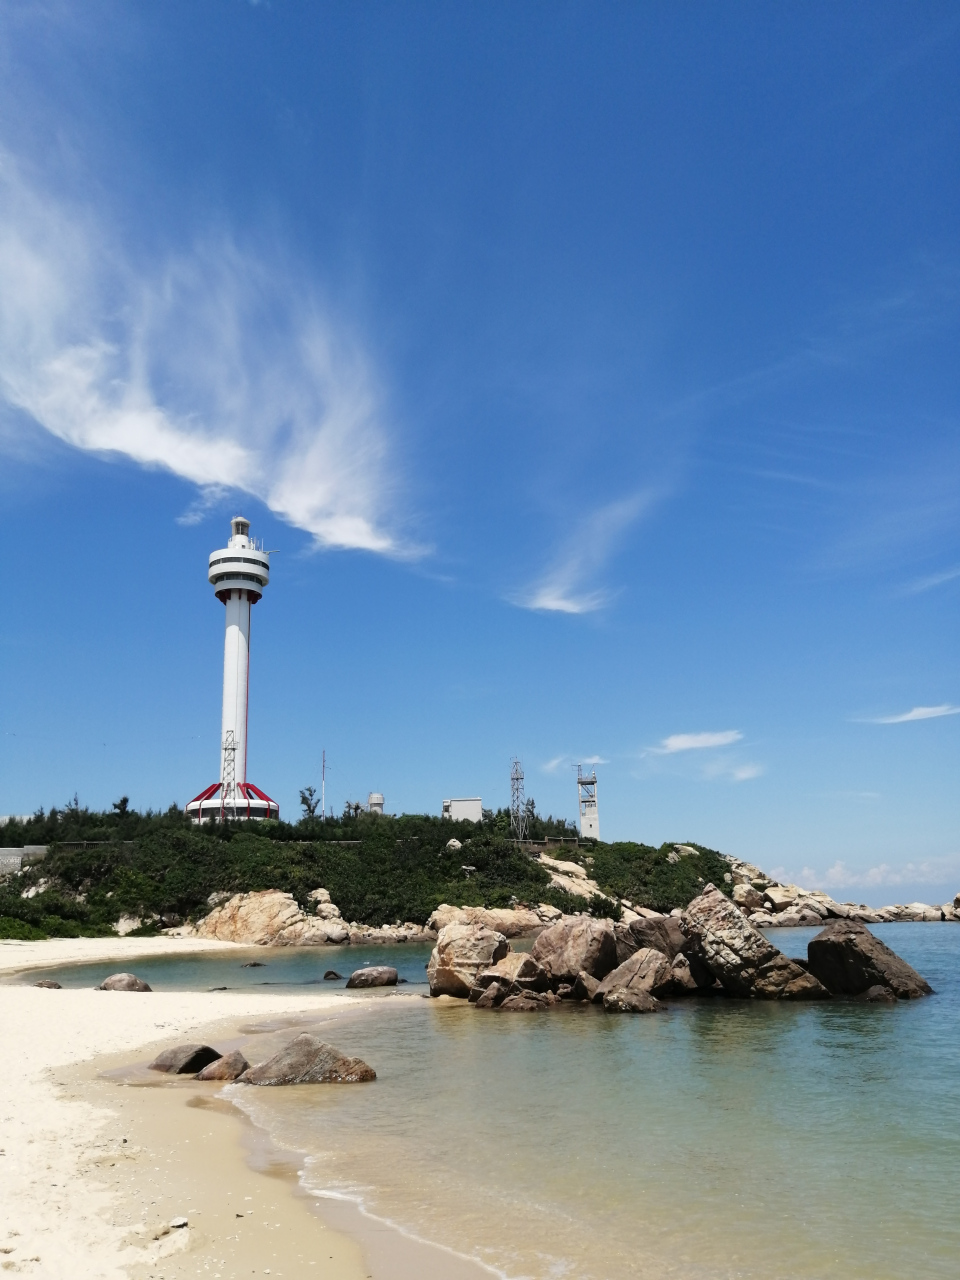 木兰湾位于海南文昌铺前镇最北端 ,木兰头灯塔为中国沿海第一高塔